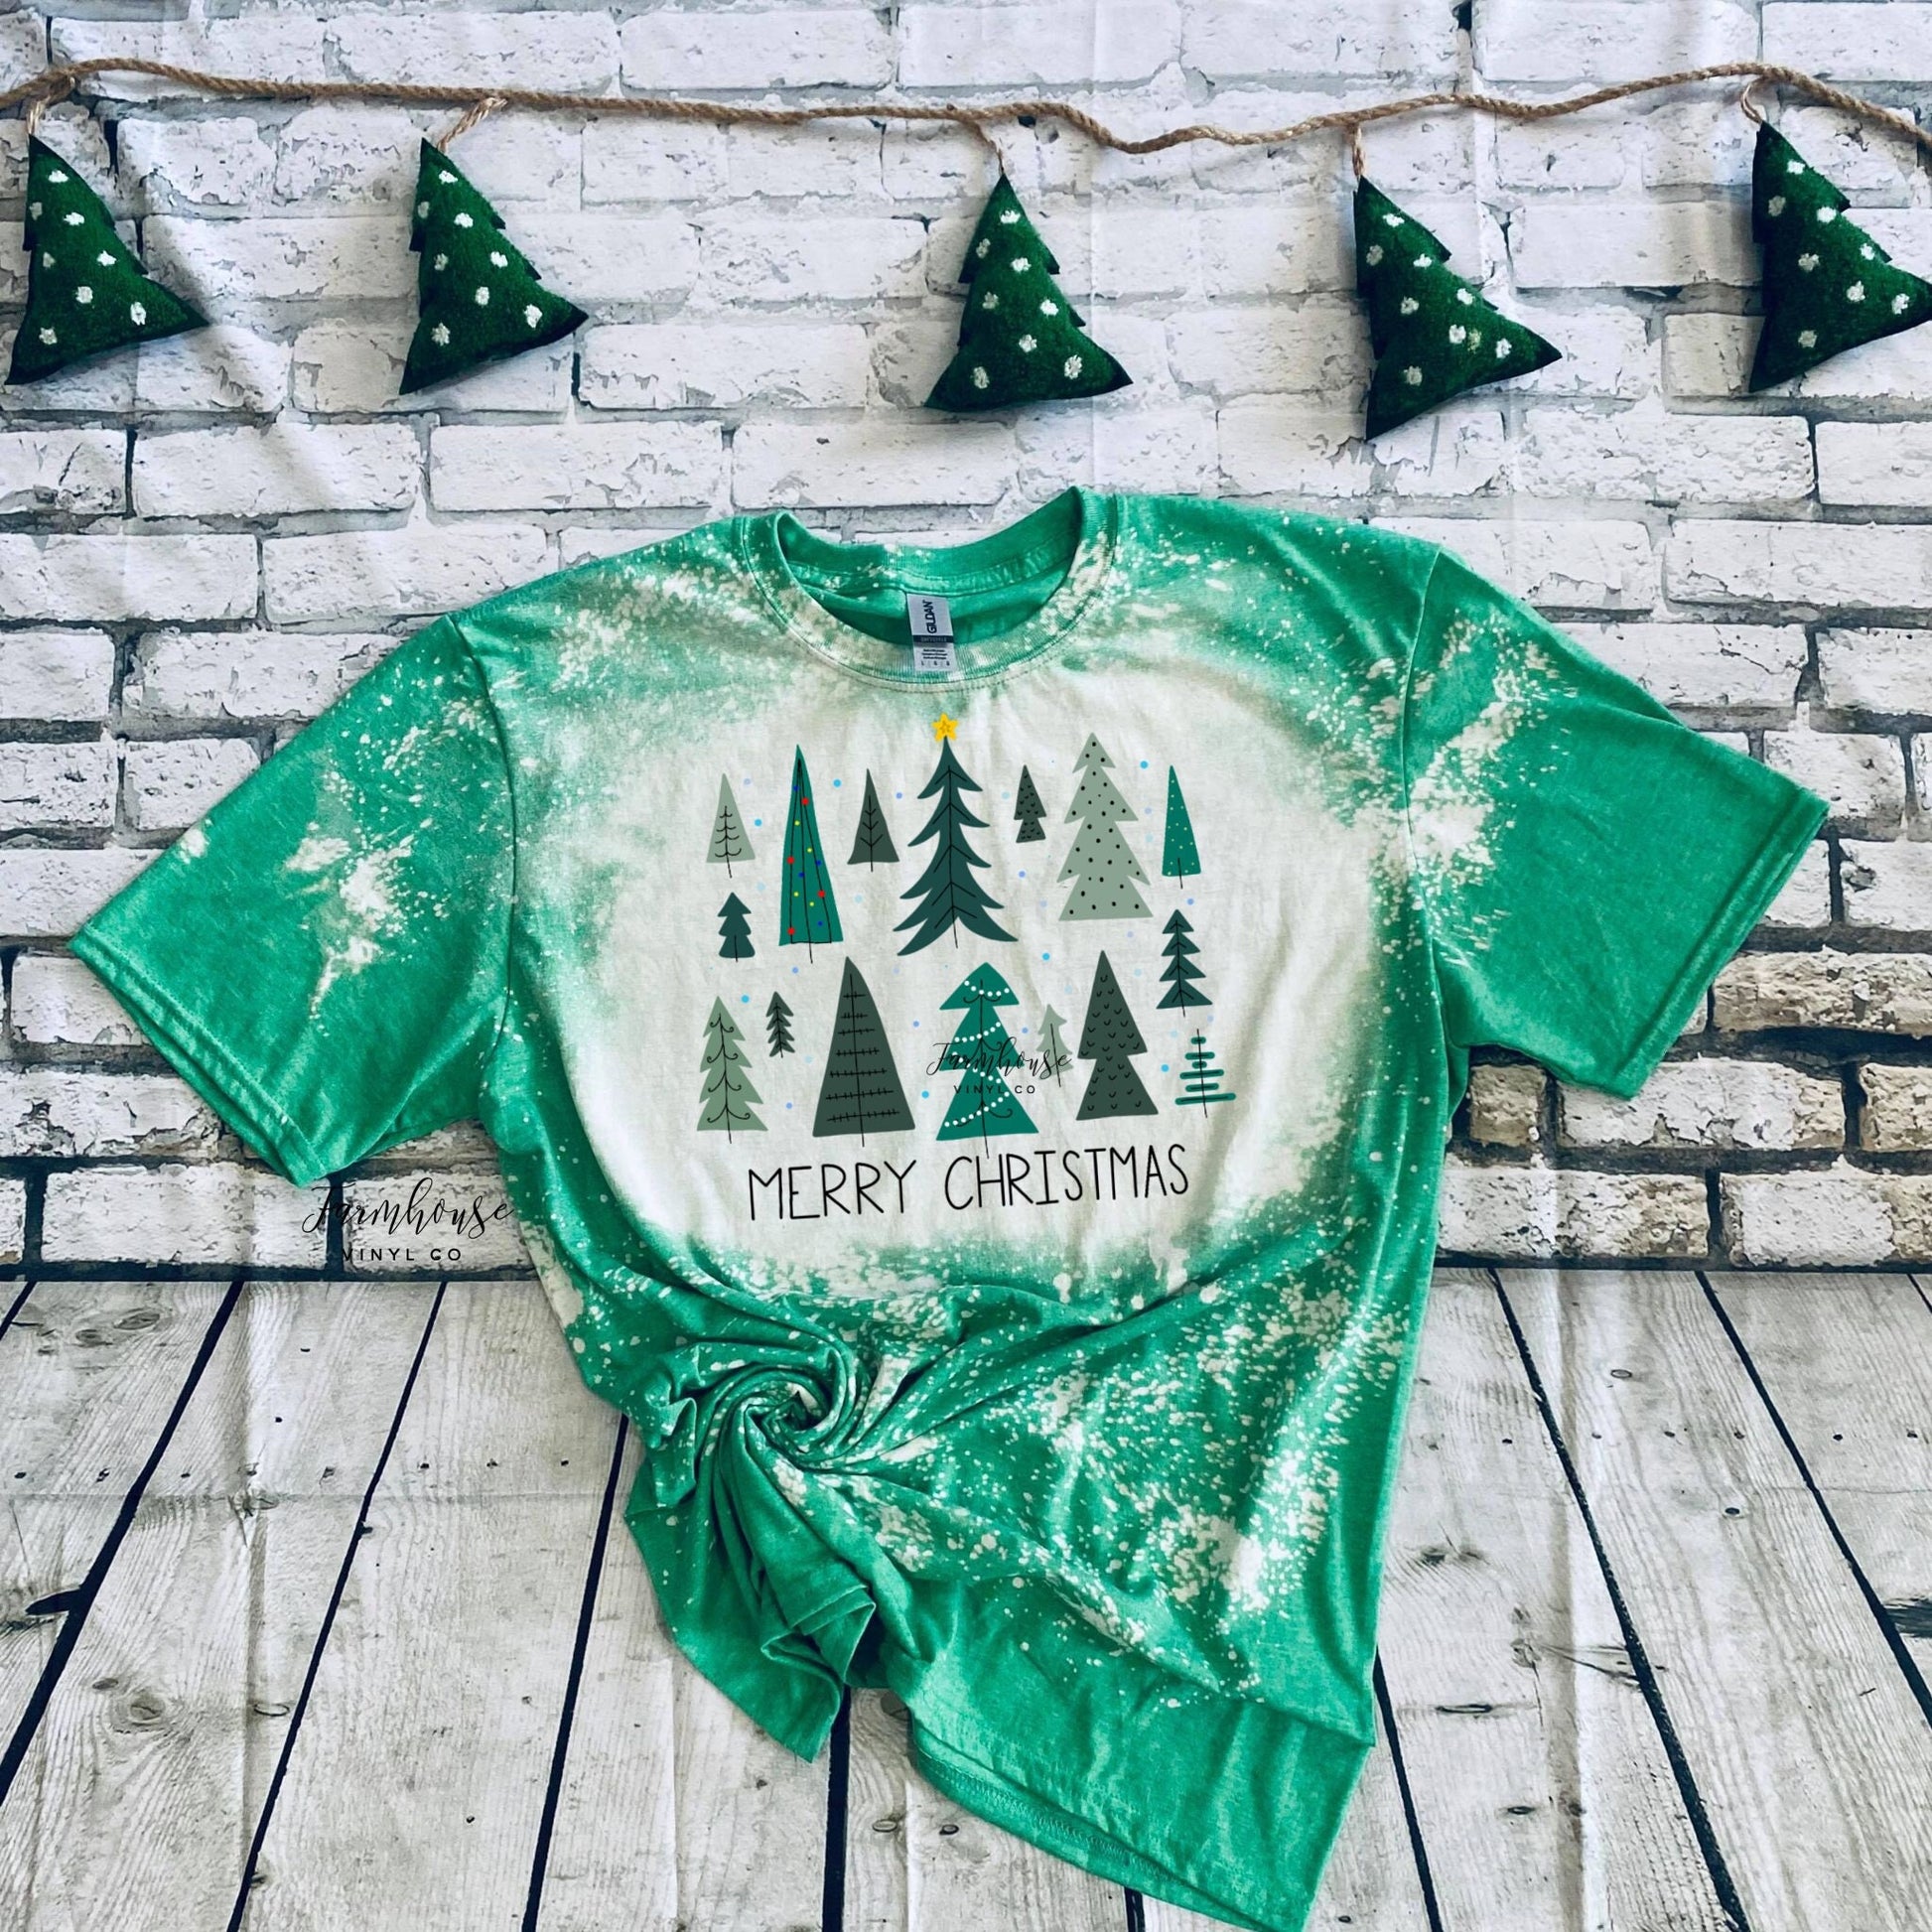 Merry Christmas Pine Trees Sweatshirt Shirt / Chirstmas TShirt / Christmas Holiday Trees Shirt / Santa Claus Sweatshirt / Xmas Tee Shirt - Farmhouse Vinyl Co